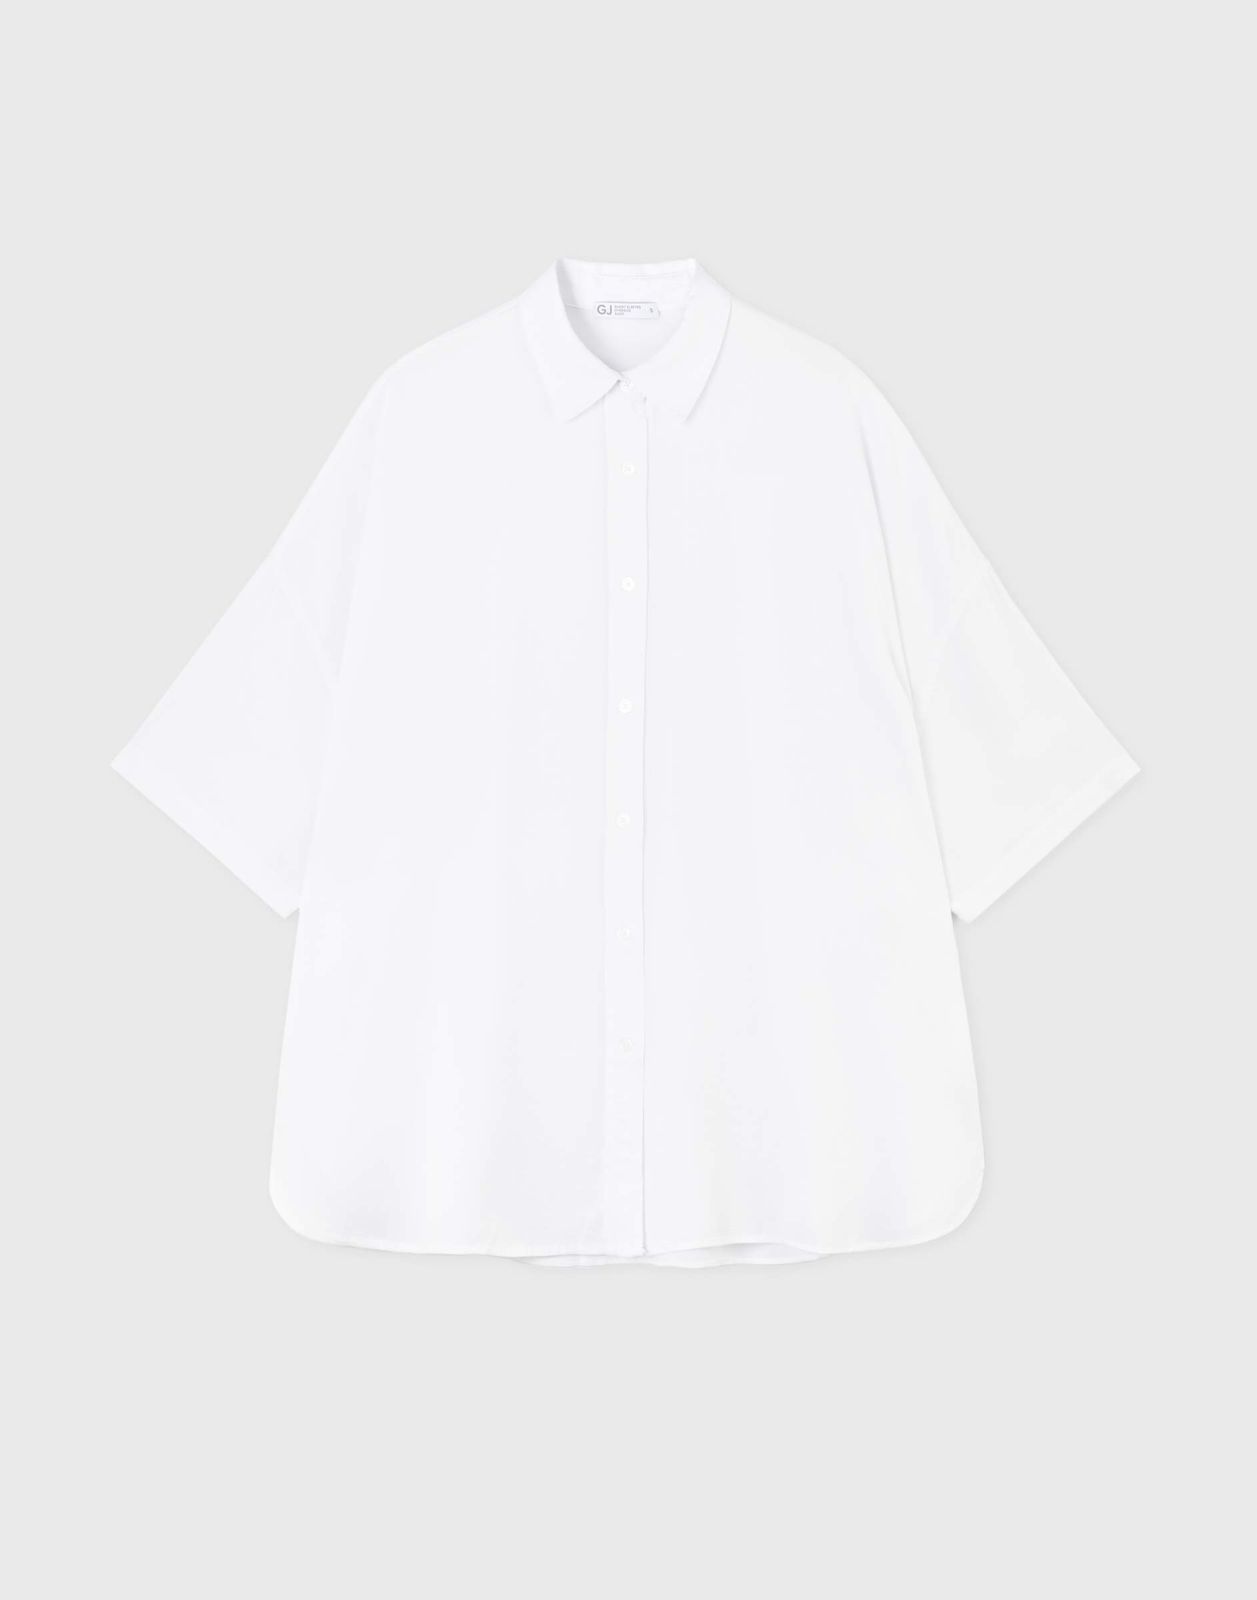 Рубашка женская Gloria Jeans GWT003611 белый M/170